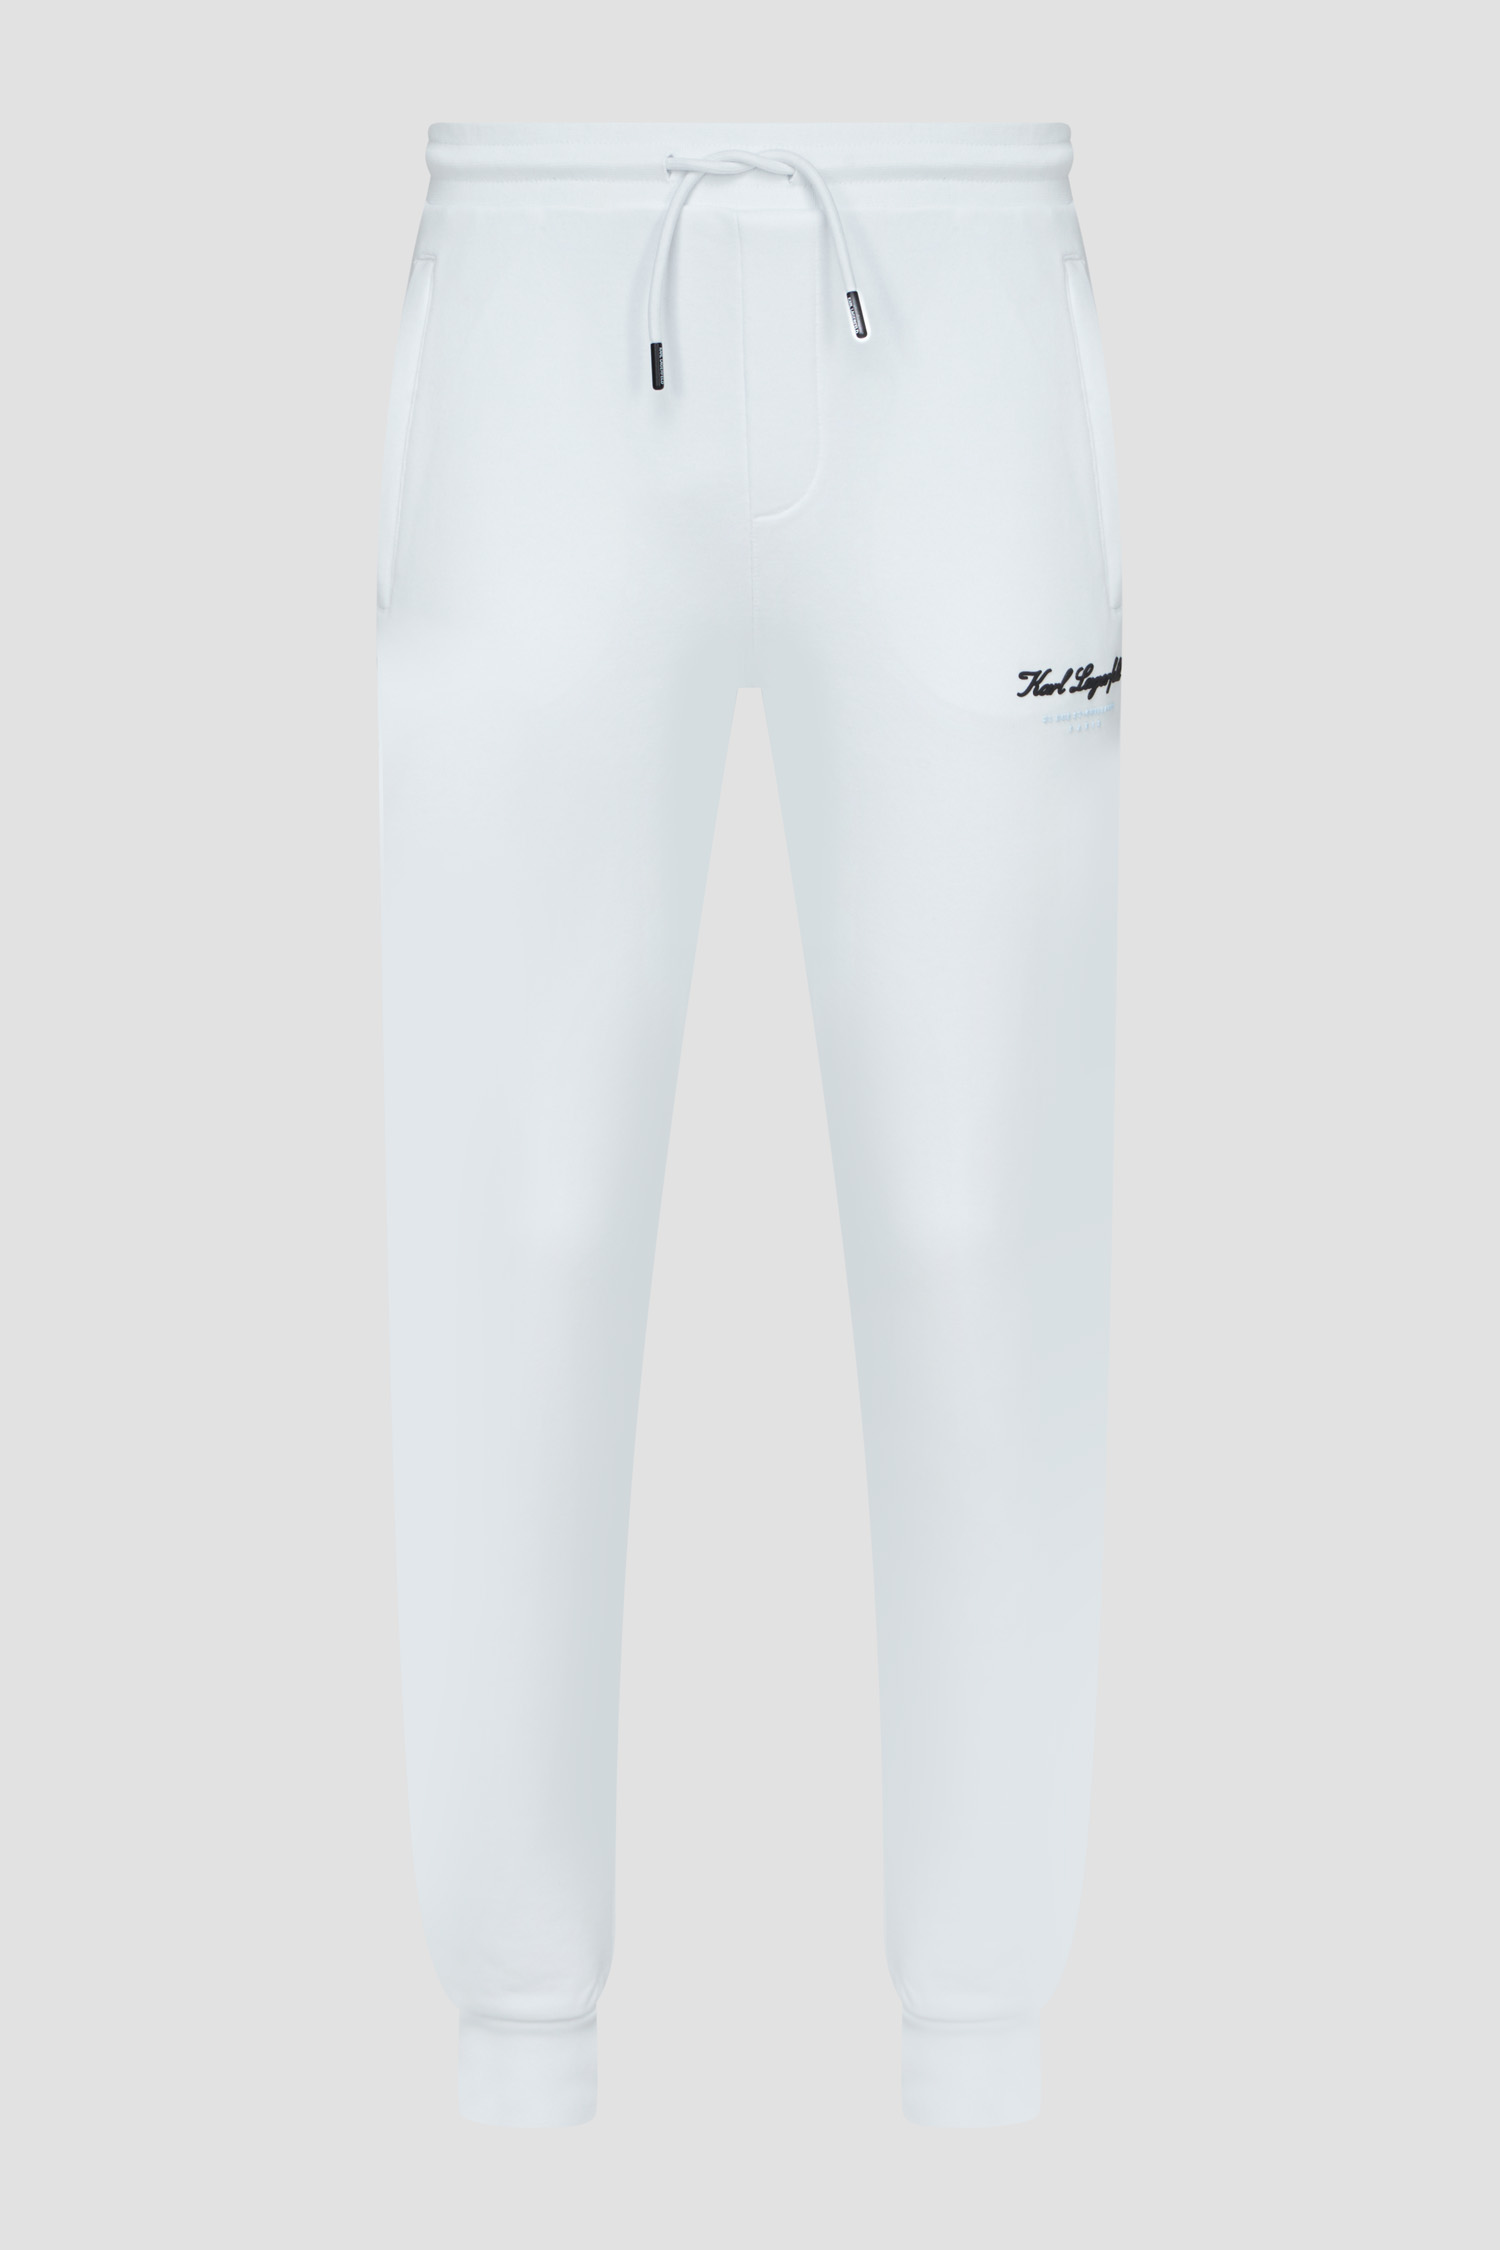 Чоловічі білі спортивні штани Karl Lagerfeld 541900.705406;10